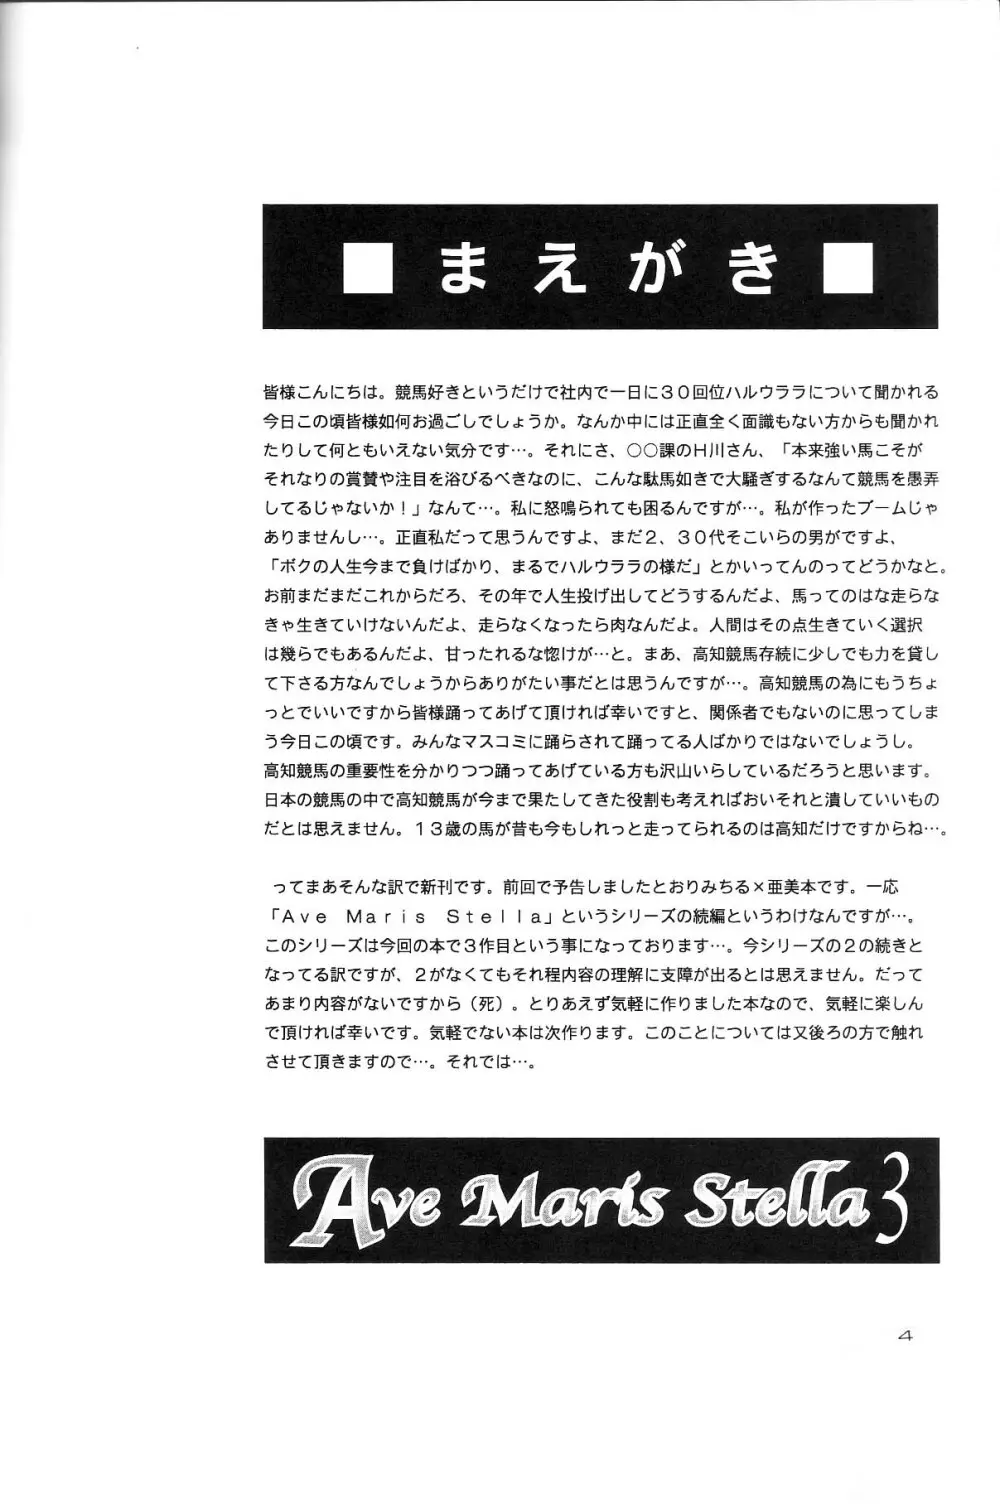 Ave Maris Stella 3 - page2